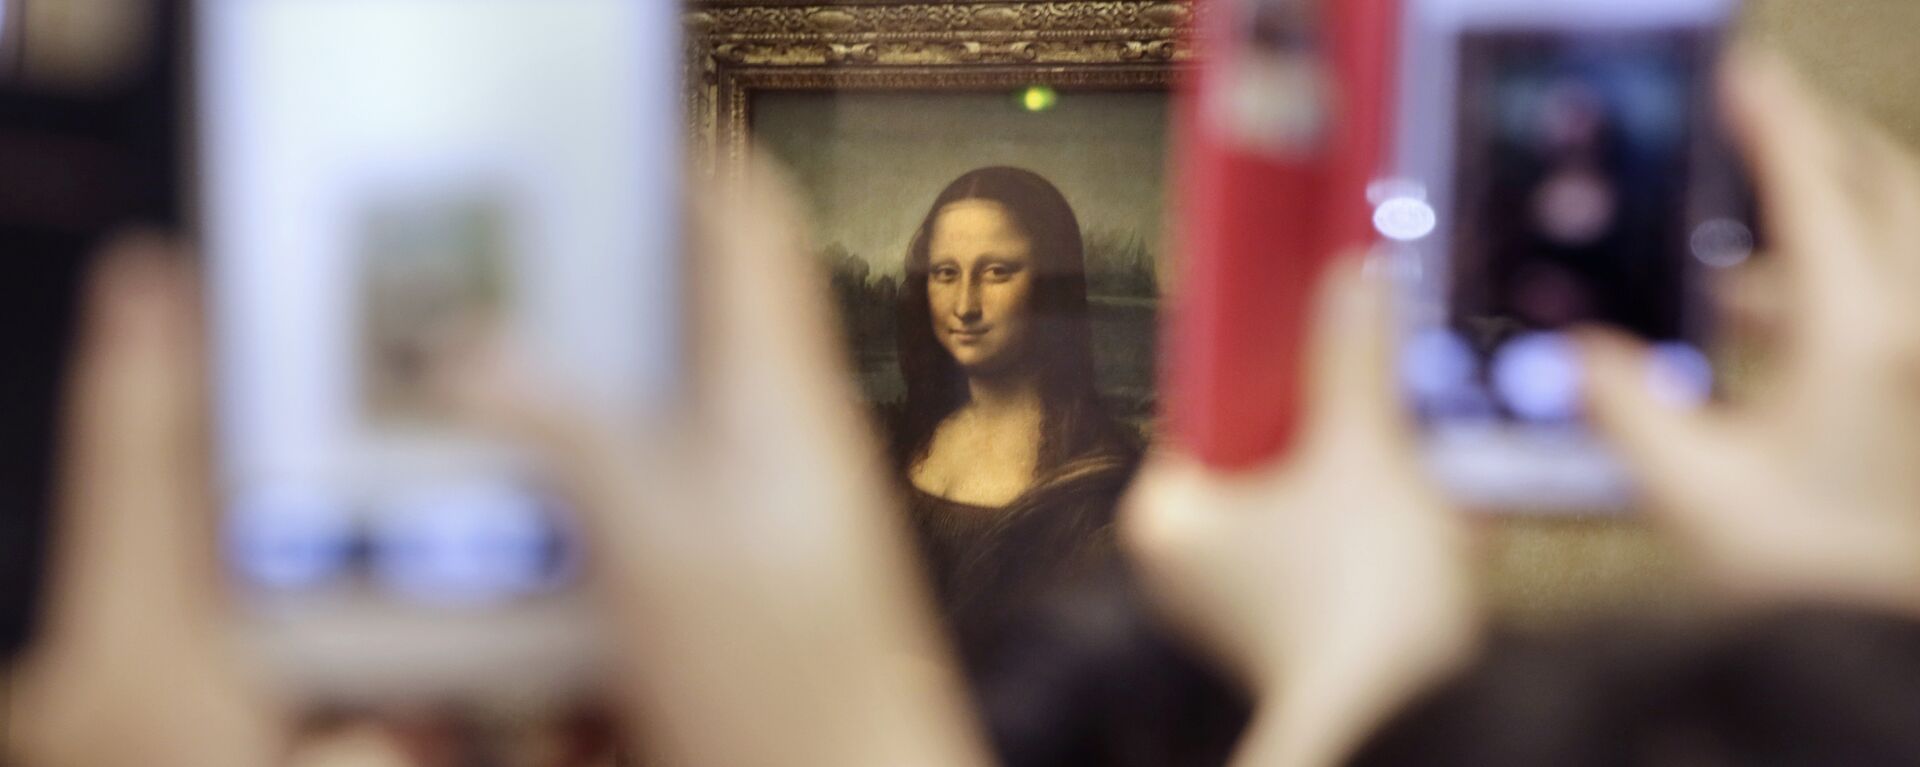 Tourists take pictures for Leonard de Vinci's La Joconde painting, Mona Lisa, at the Louvre museum in Paris, France, Thursday, Nov.19, 2015 - Sputnik International, 1920, 07.06.2019